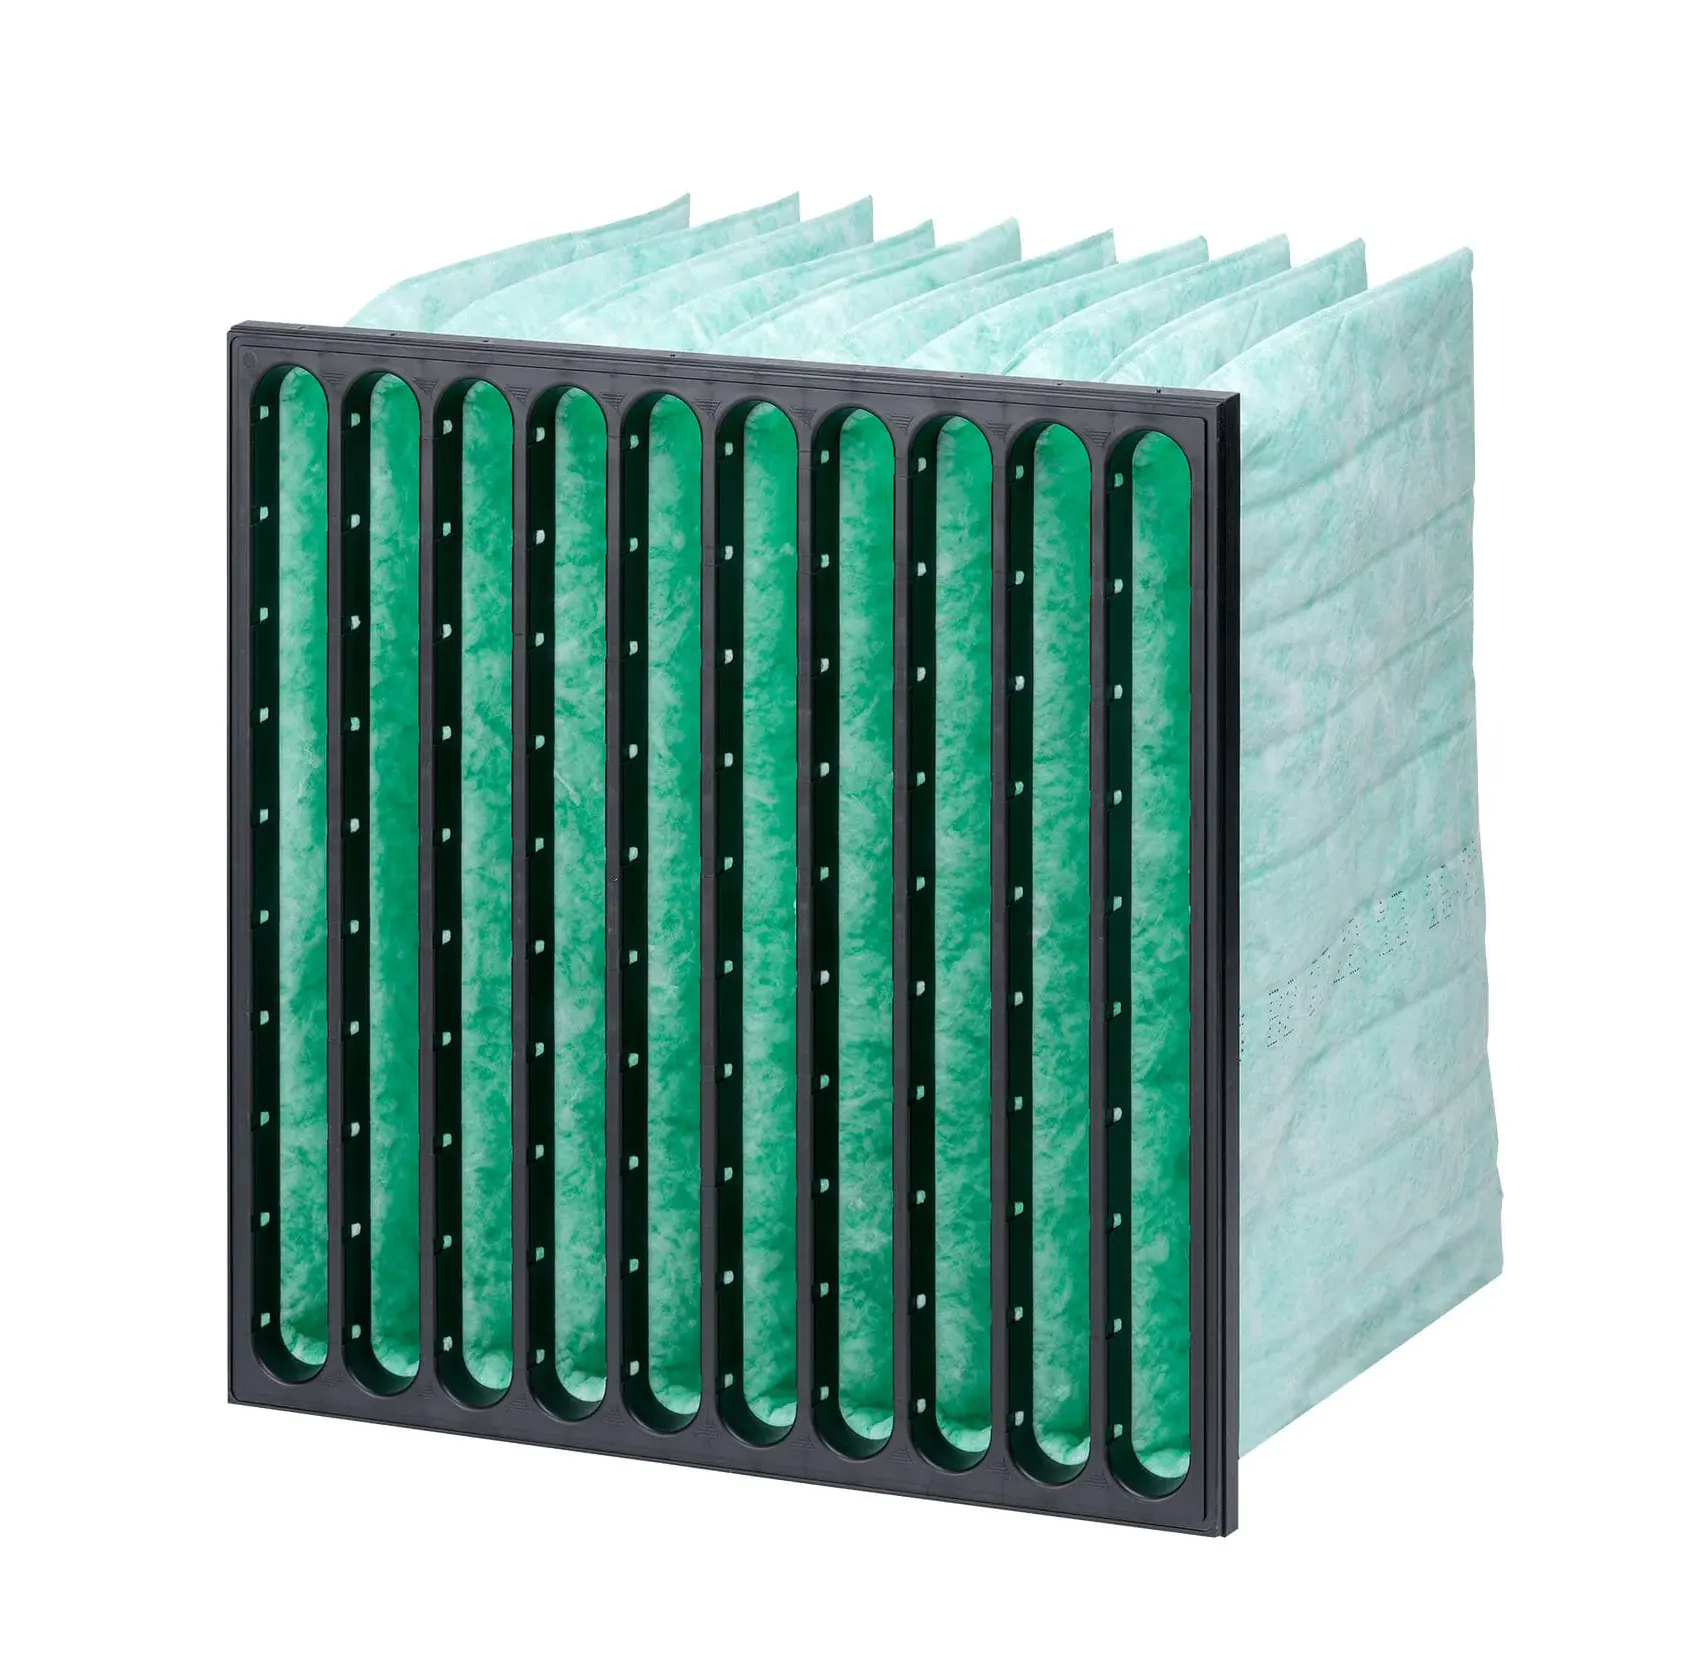 Industrie klimaanlage Filter ventil beutel Tasche Luftfilter mit mittlerem Wirkungsgrad Für Luftfilter im HLK-Reinigungs raum beutel